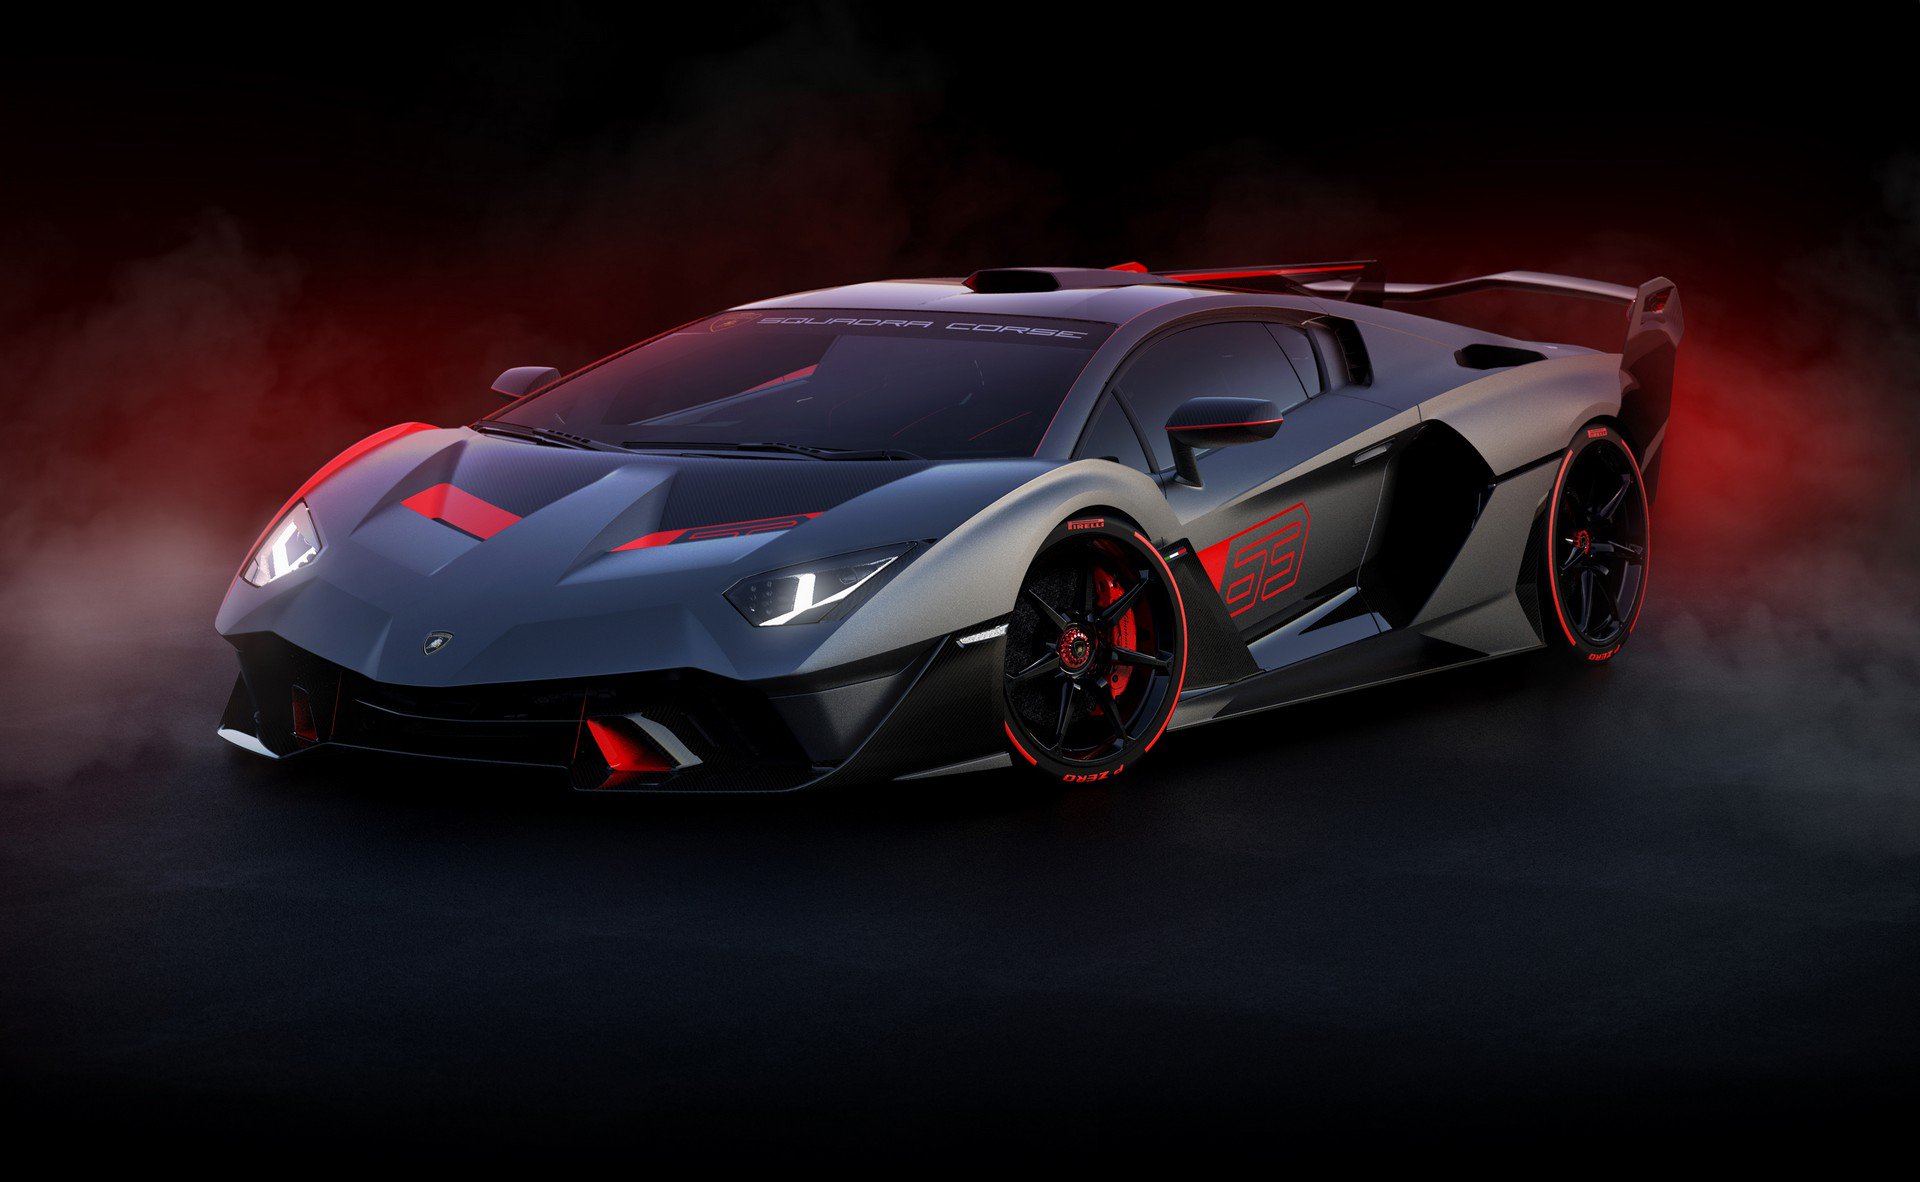 Hãng xe sang Lamborghini tạm biệt các triển lãm ô tô vì không kham nổi chi phí